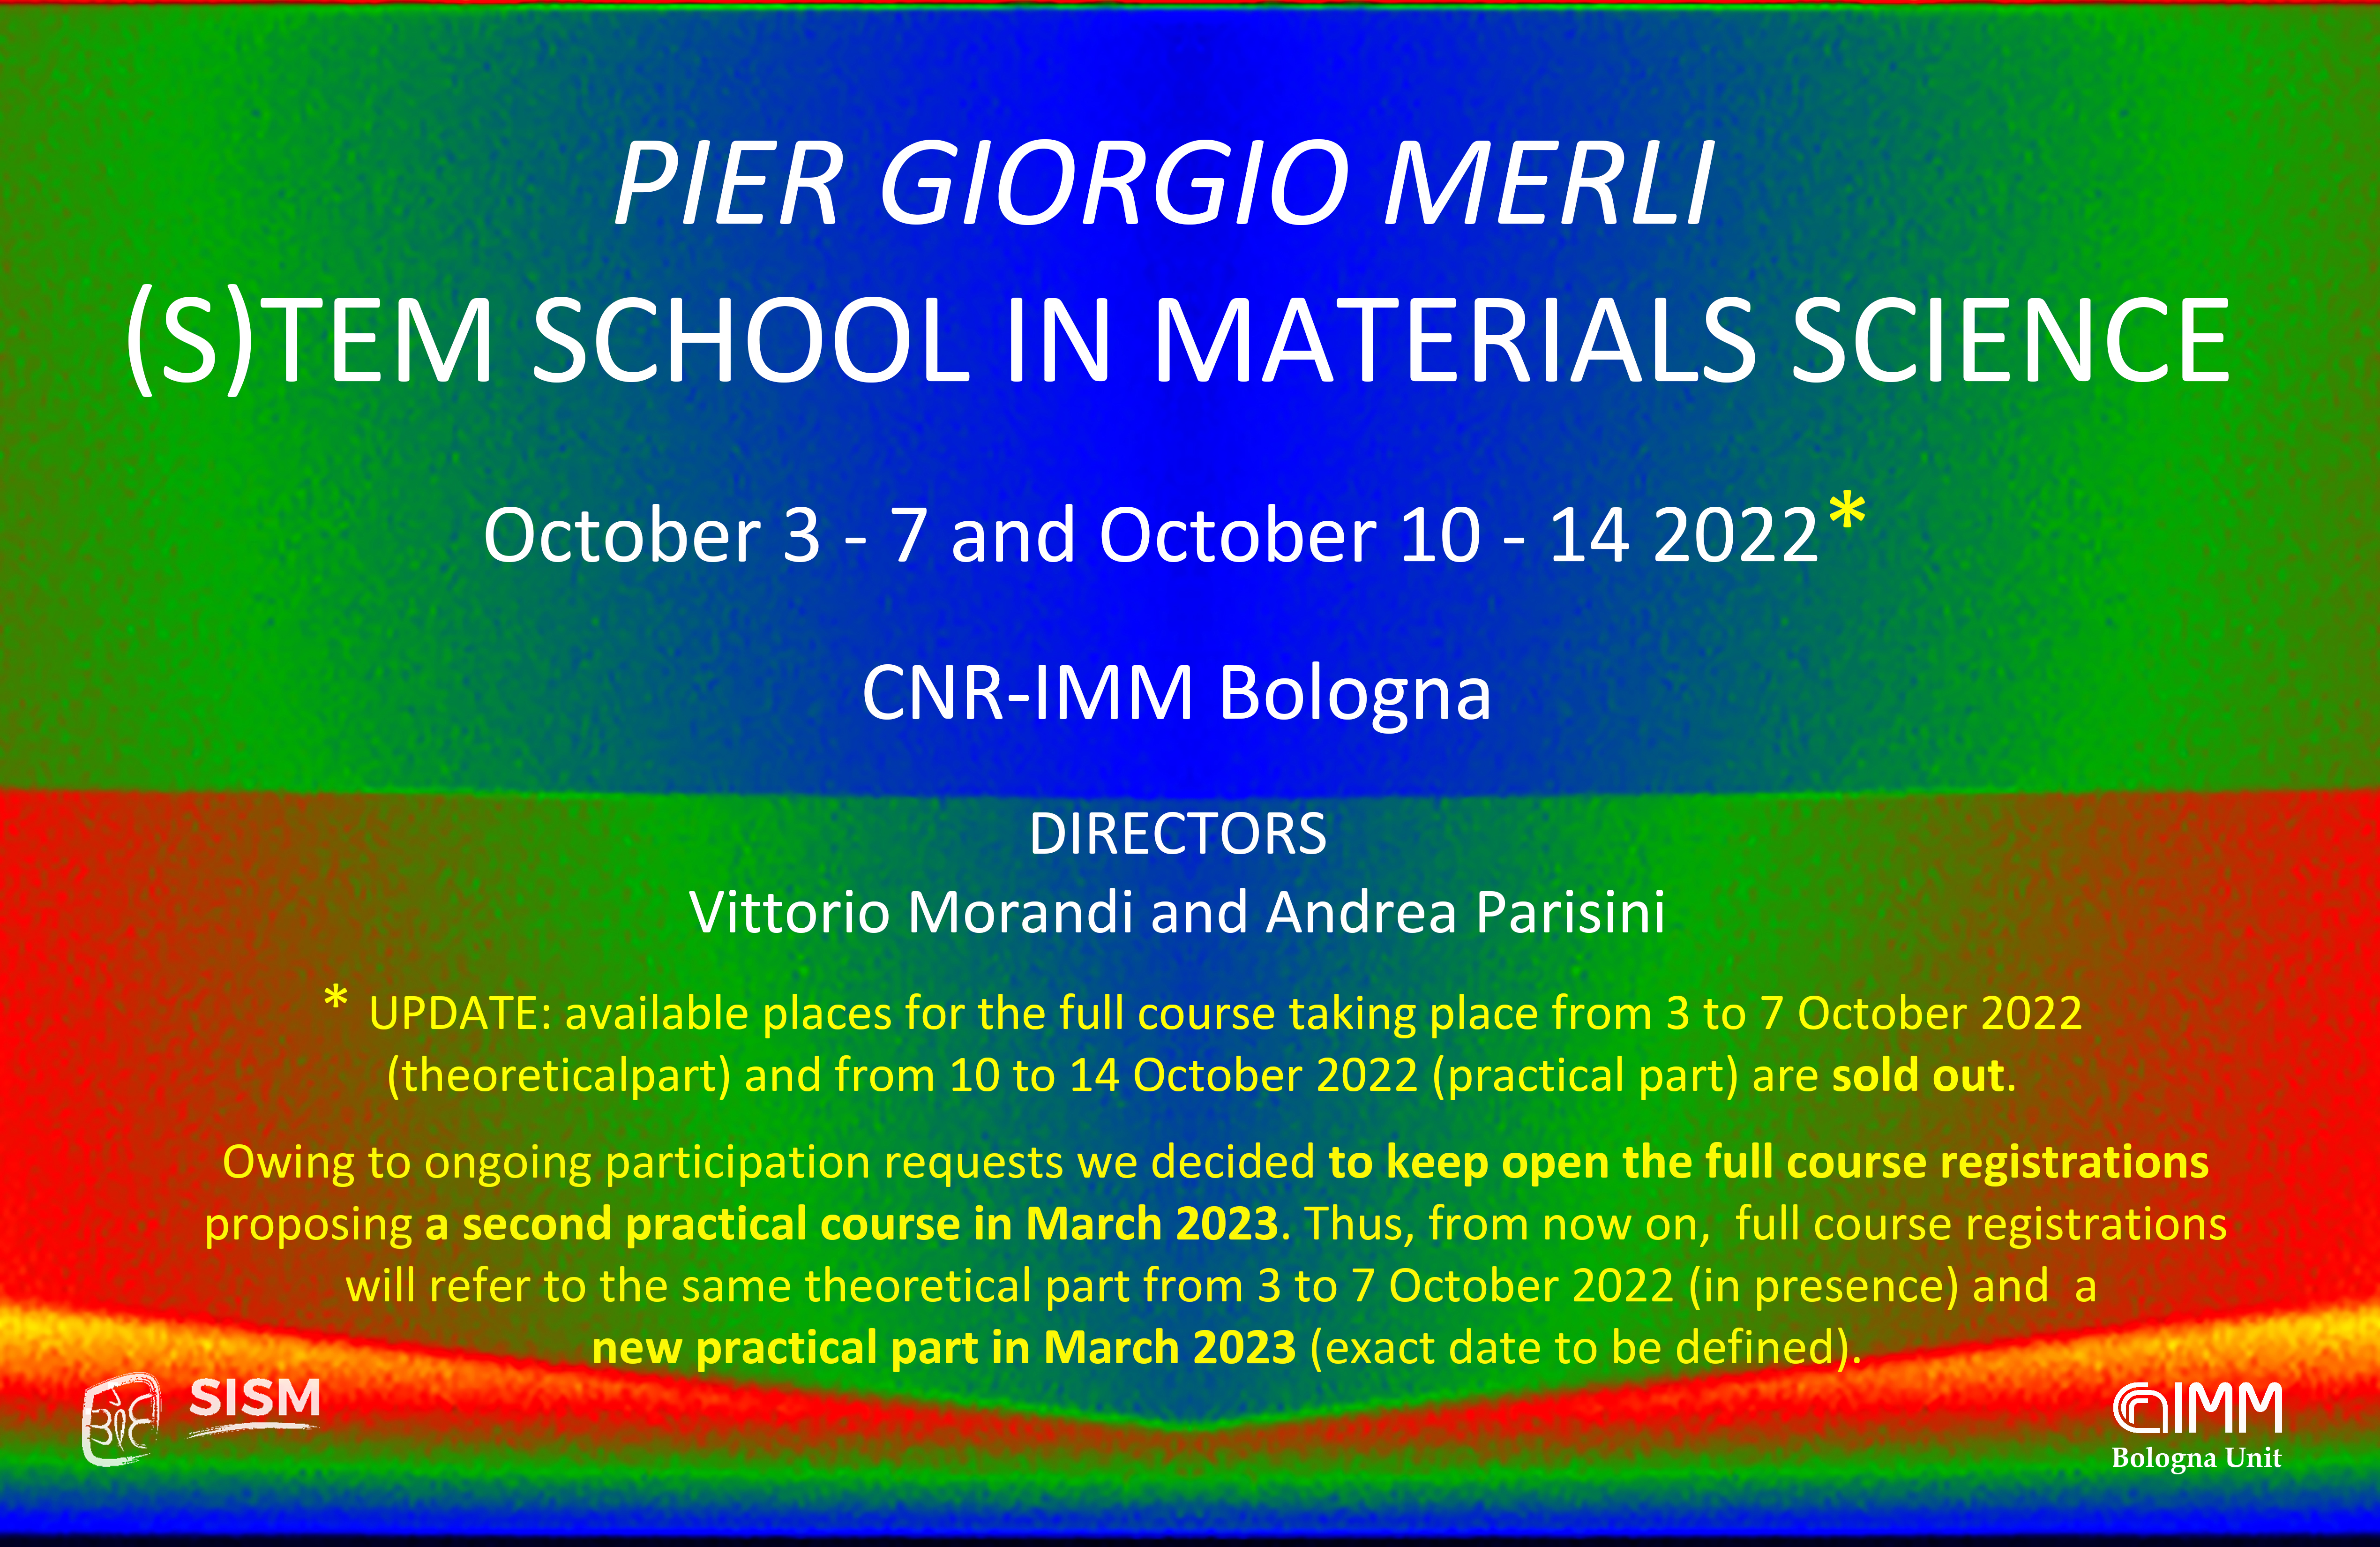 <i>Pier Giorgio Merli</i> (S)TEM SCHOOL IN MATERIALS SCIENCE  -  8th Edition <br><br>  